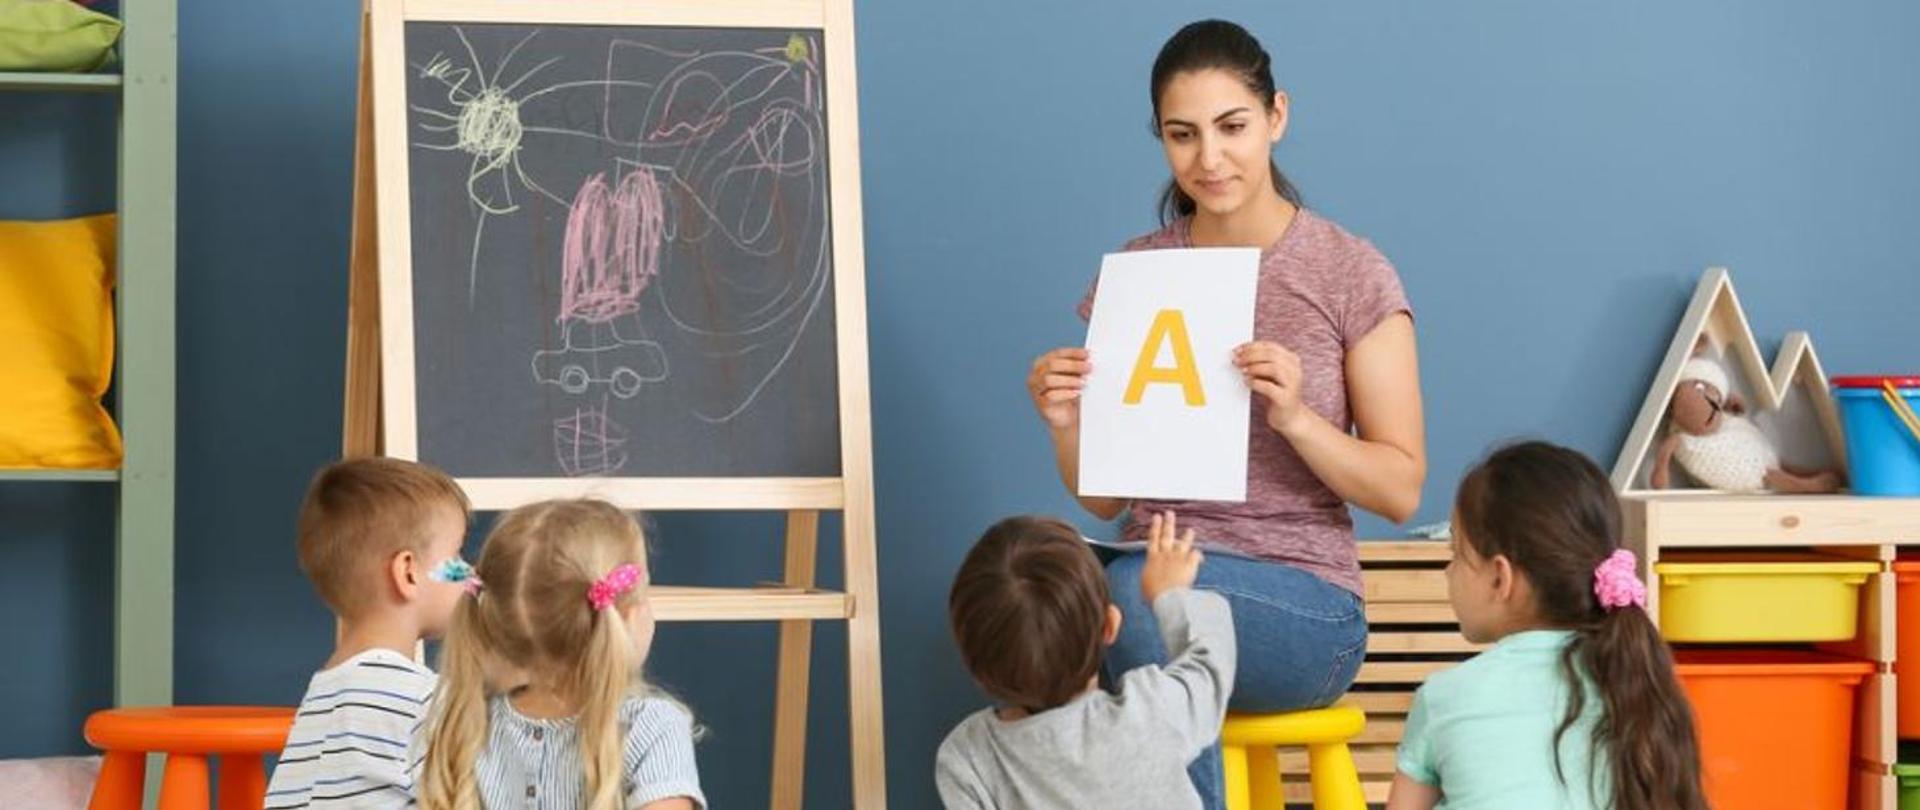 Zdjęcie sali lekcyjnej, siedząca kobieta - nauczycielka trzymająca w ręku kartkę na której widnieje litera A, przed kobietą siedzi czworo dzieci patrzących w stronę kobiety.